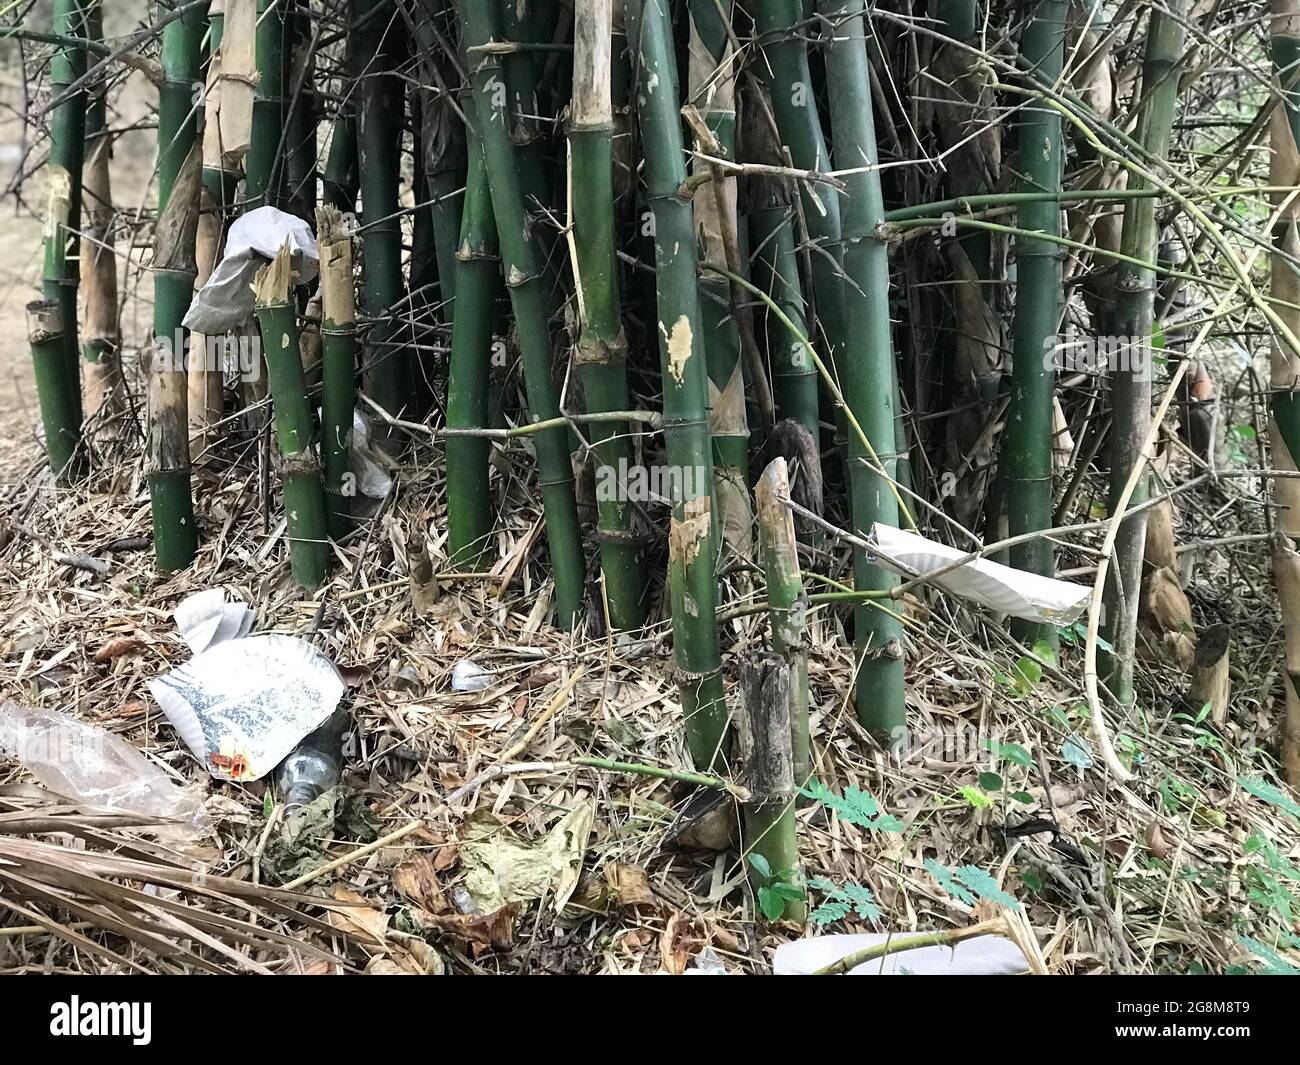 Beaucoup de bambous sont cultivés dans une forêt dense et semble si forte et vert foncé Banque D'Images